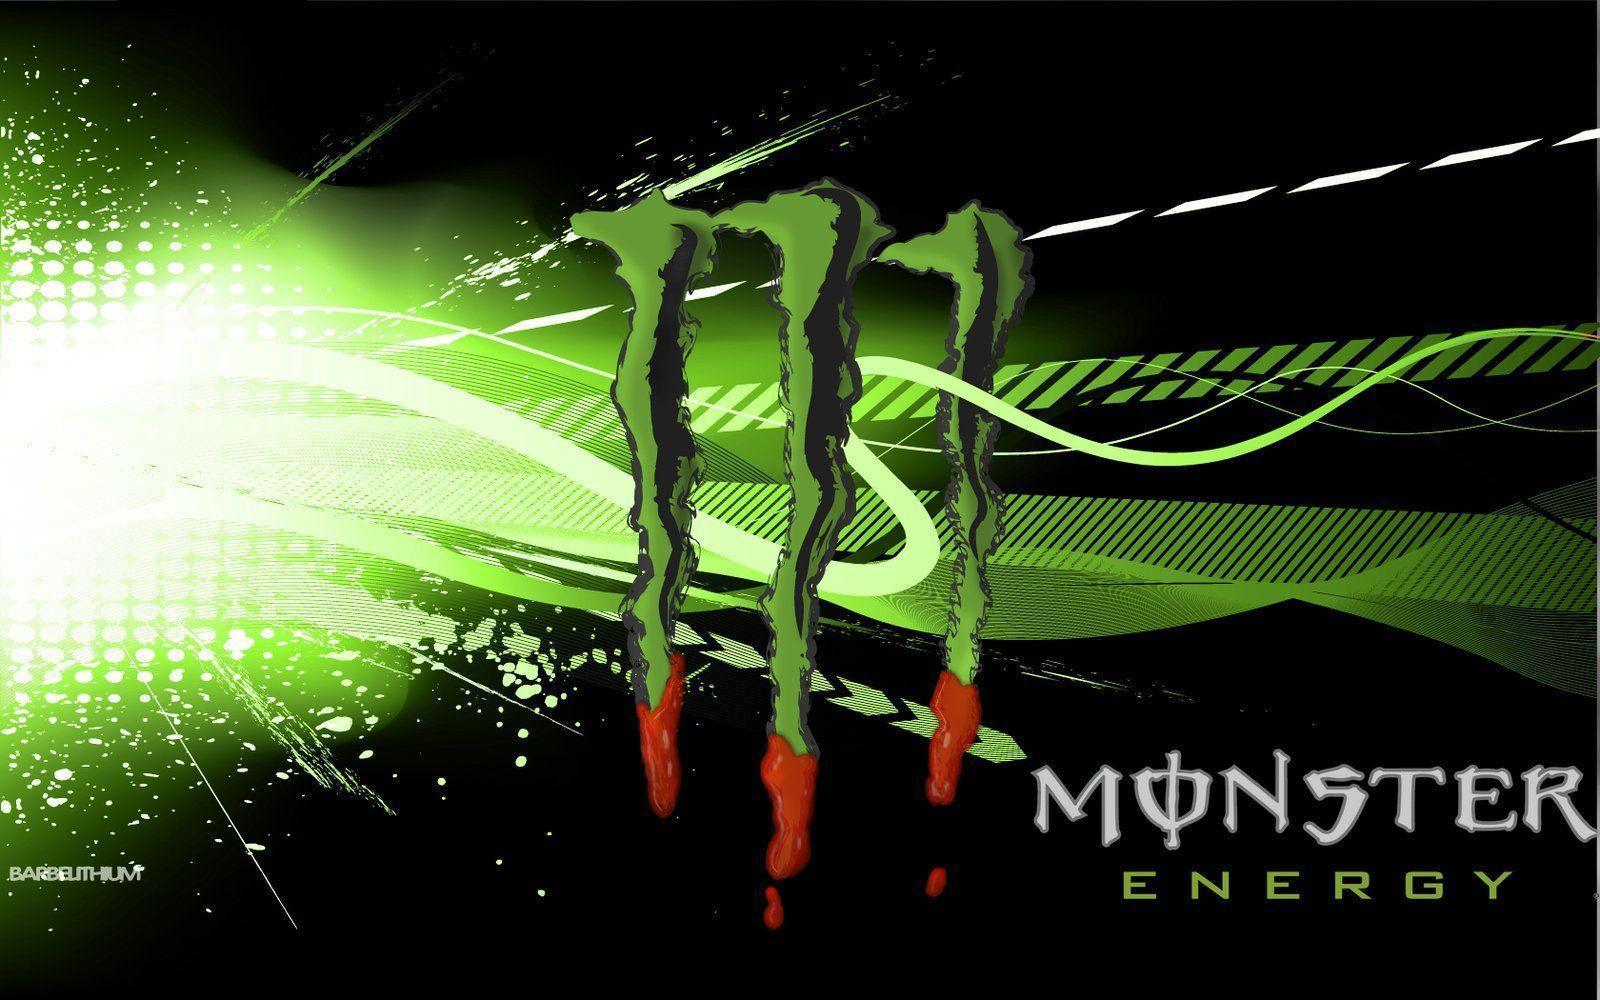 Wallpaper For > Monster Army Logo Wallpaper